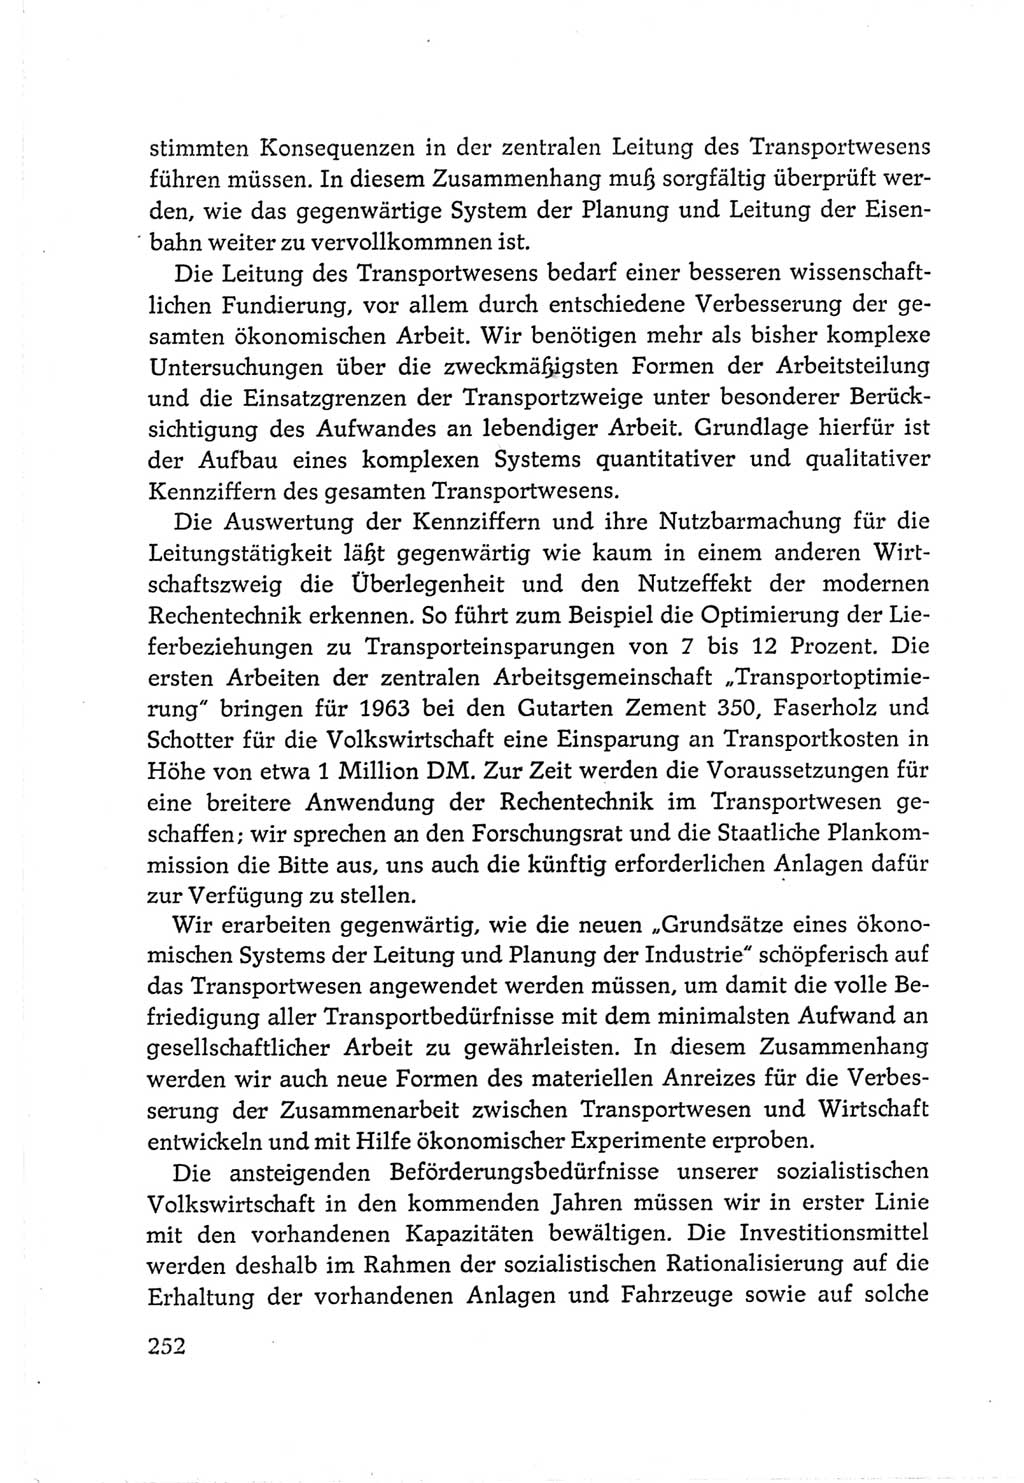 Protokoll der Verhandlungen des Ⅵ. Parteitages der Sozialistischen Einheitspartei Deutschlands (SED) [Deutsche Demokratische Republik (DDR)] 1963, Band Ⅲ, Seite 252 (Prot. Verh. Ⅵ. PT SED DDR 1963, Bd. Ⅲ, S. 252)